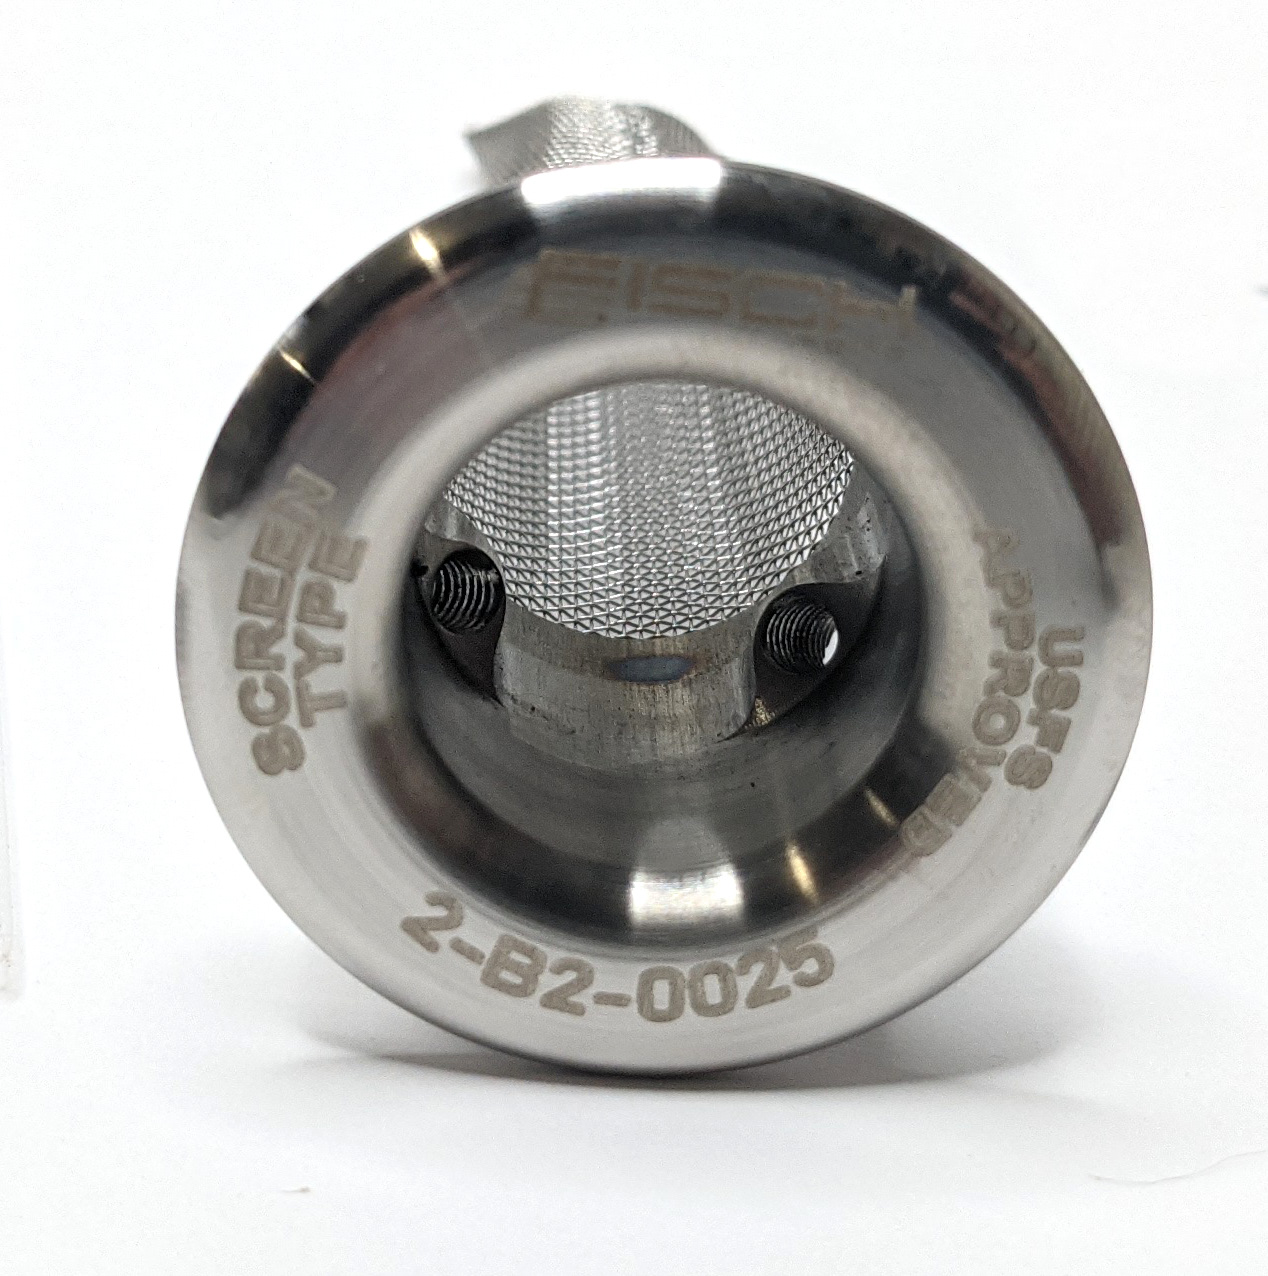 KIT 25 USFS Spark Arrestor w/ Wash Plug - For 25.5mm - 29.4mm Outlet - Click Image to Close